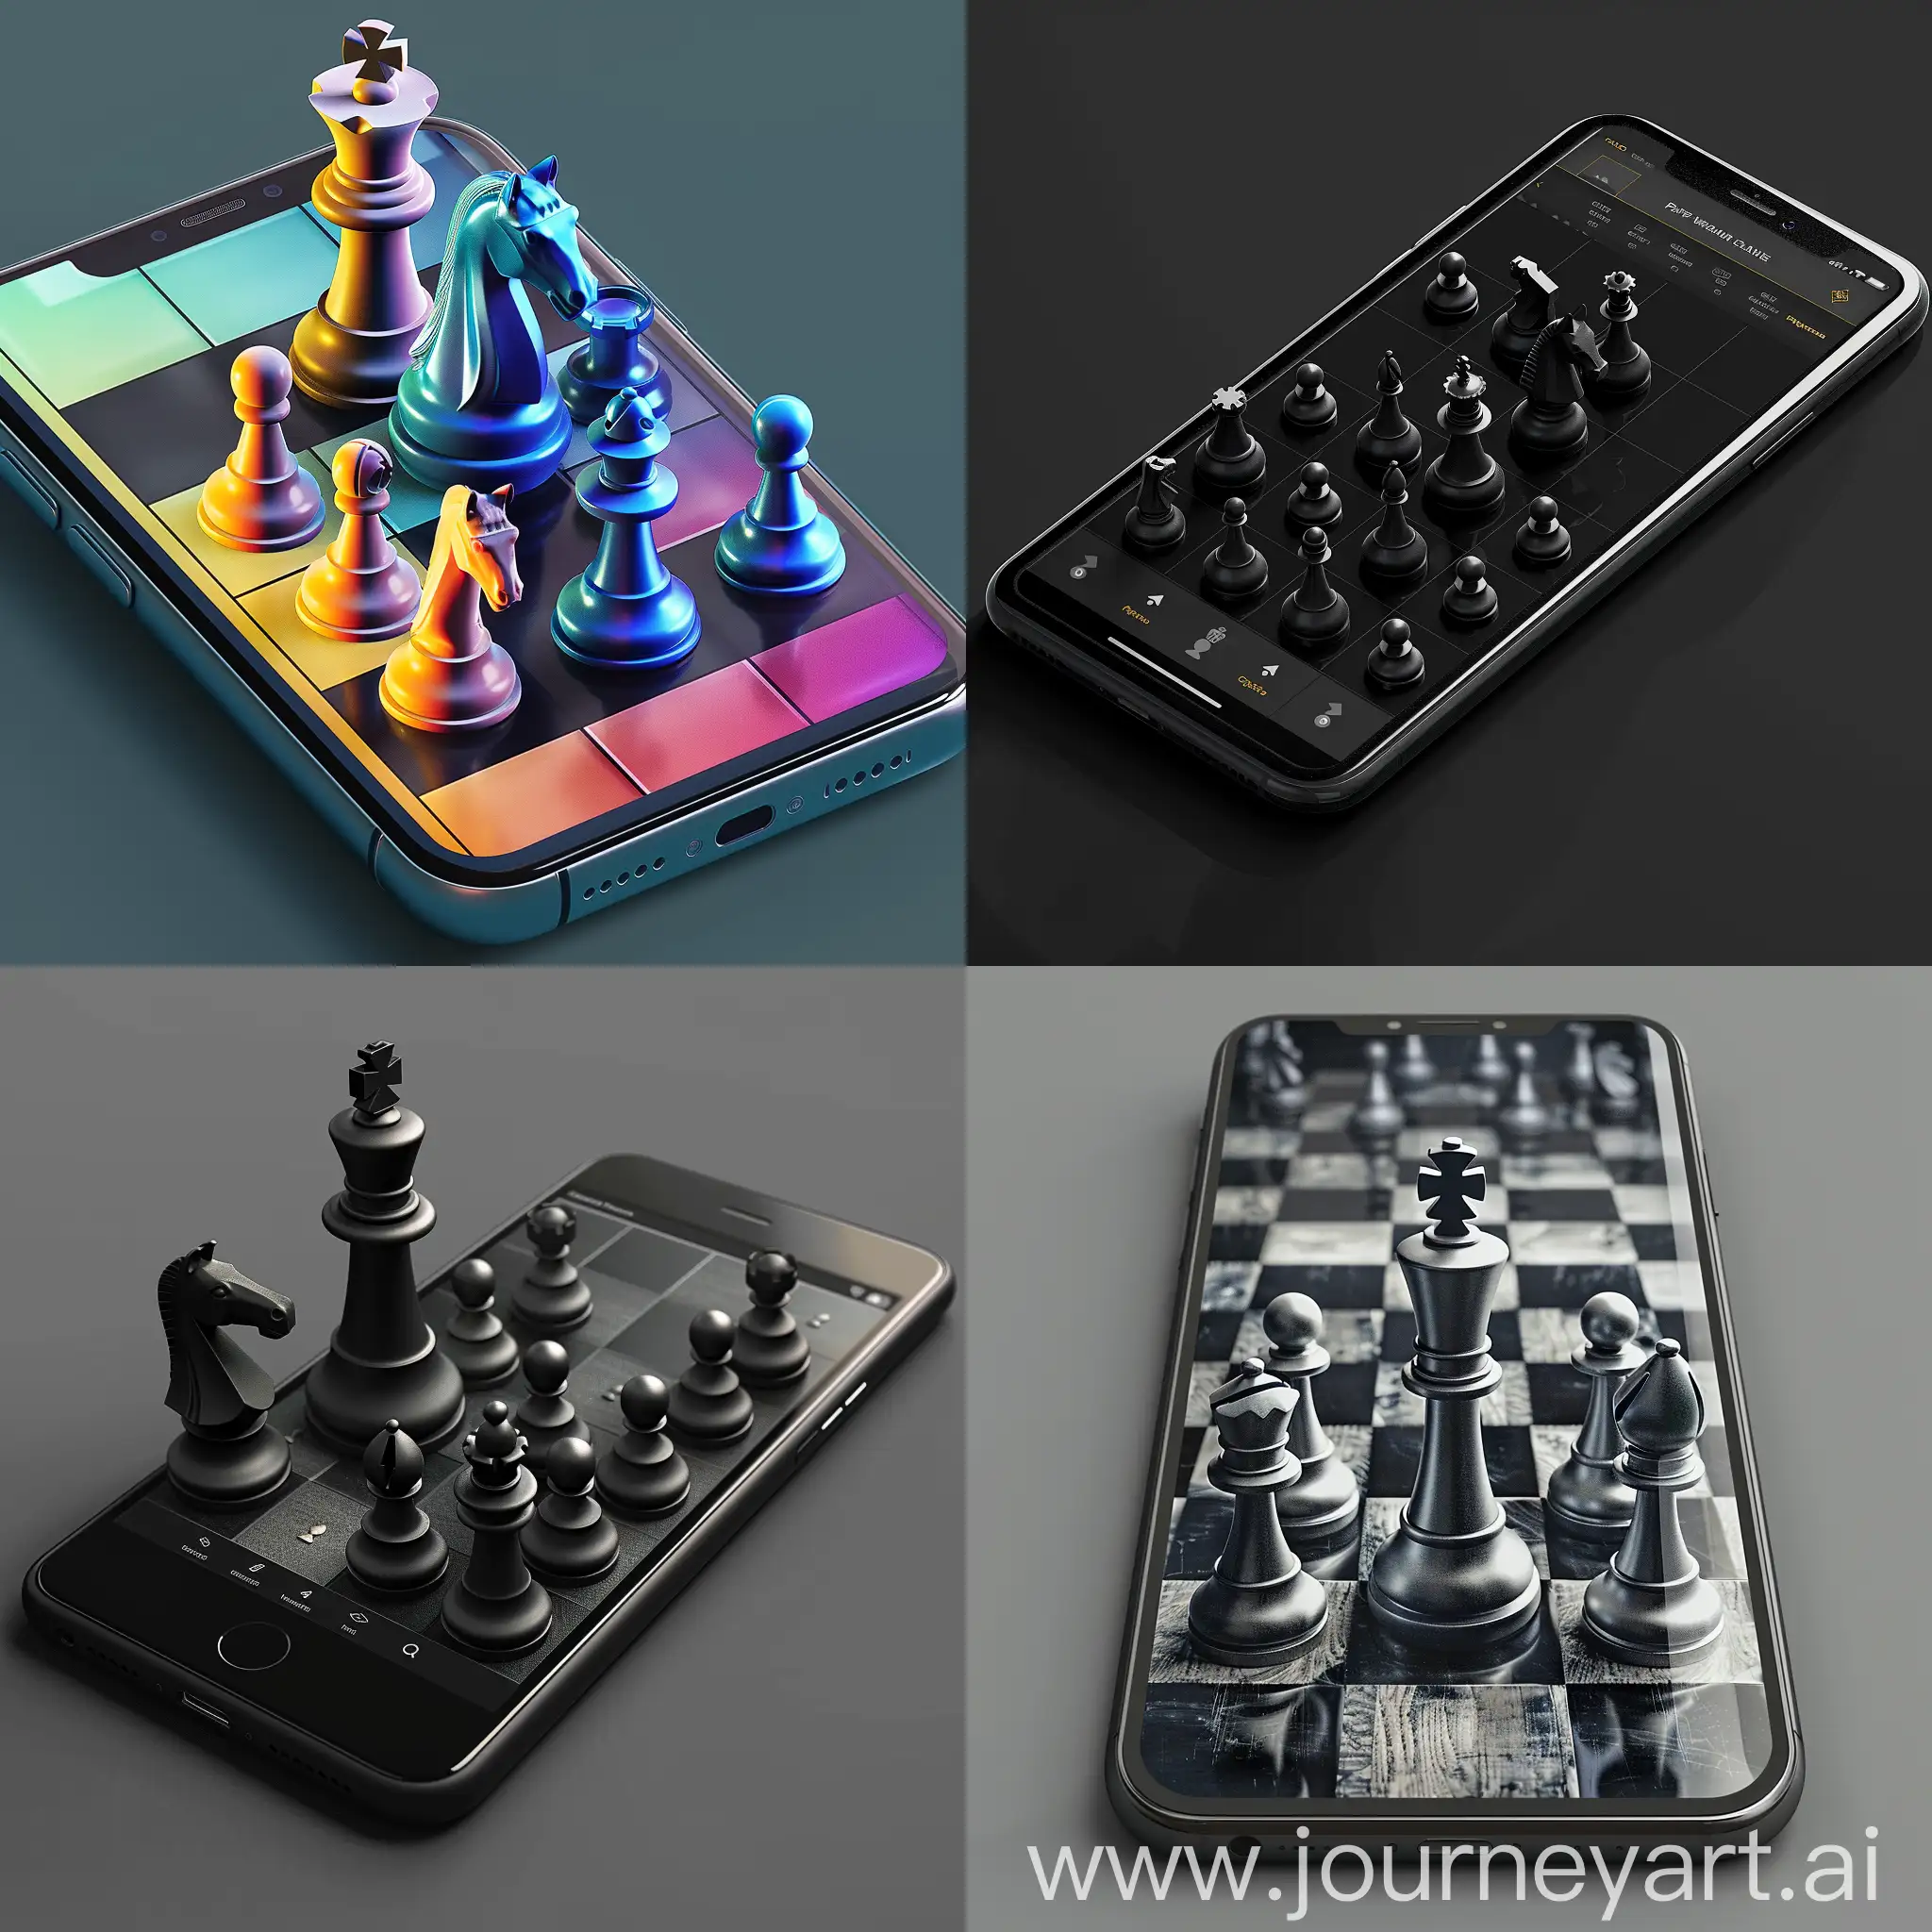 нужно придумать дизайн для мобильного приложения шахматы